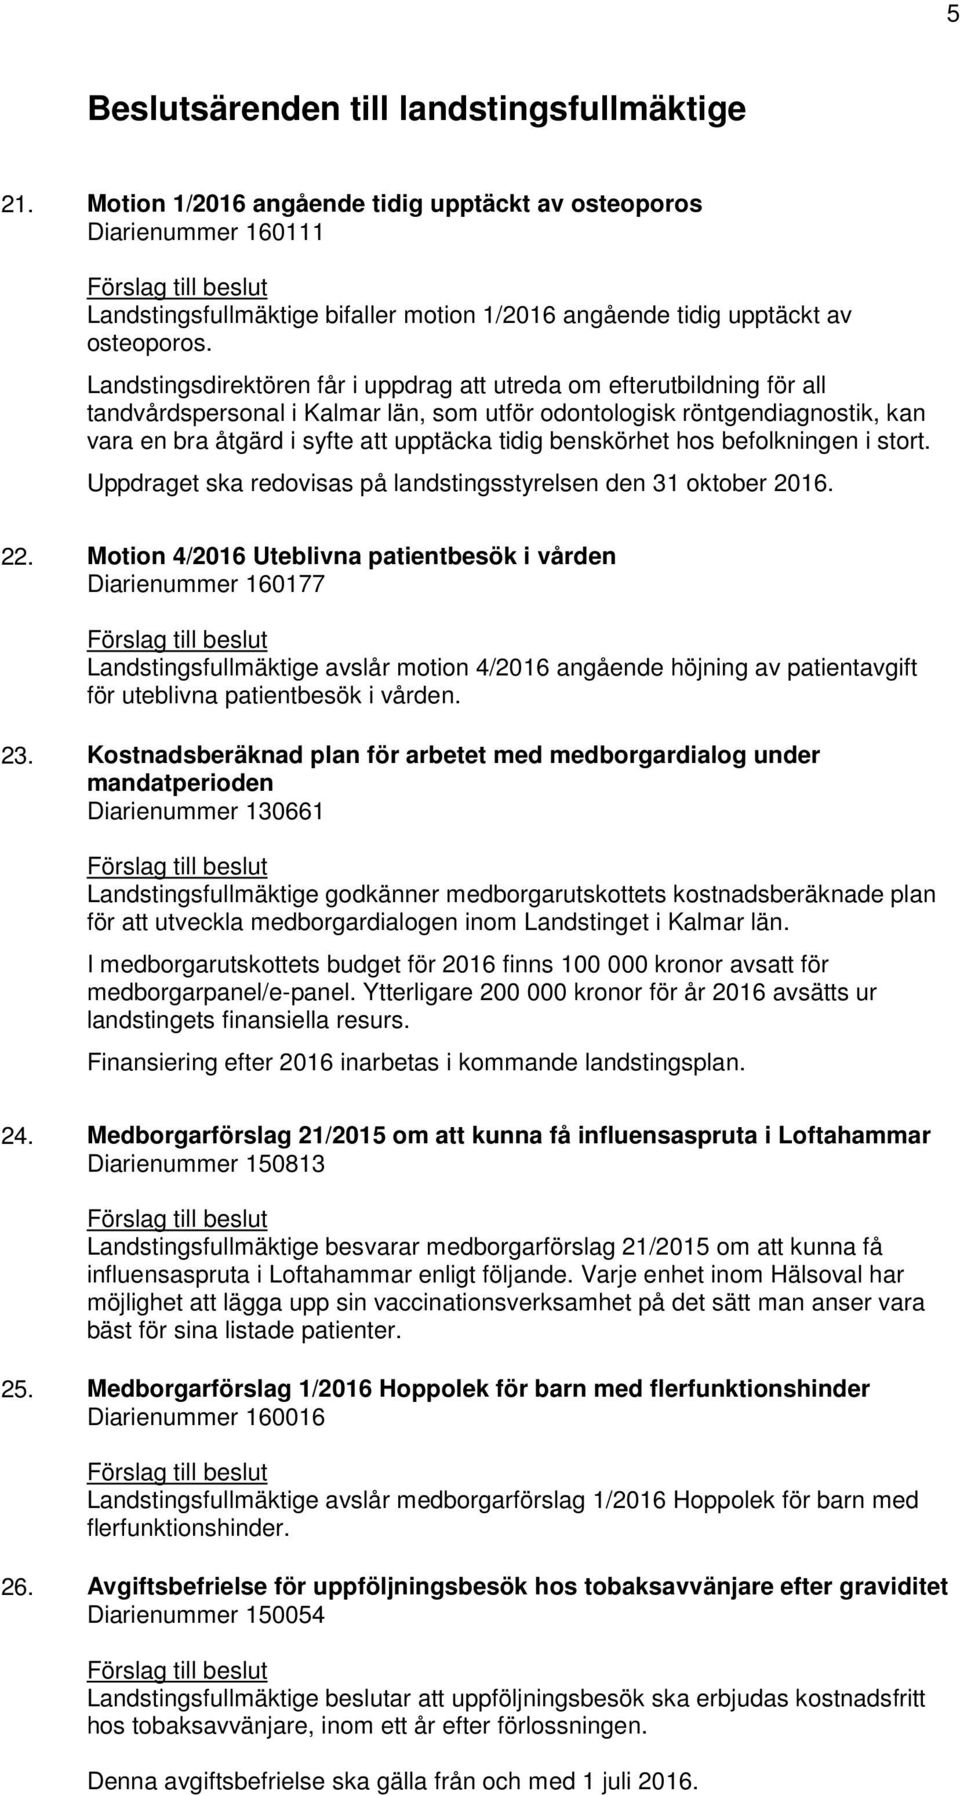 Landstingsdirektören får i uppdrag att utreda om efterutbildning för all tandvårdspersonal i Kalmar län, som utför odontologisk röntgendiagnostik, kan vara en bra åtgärd i syfte att upptäcka tidig